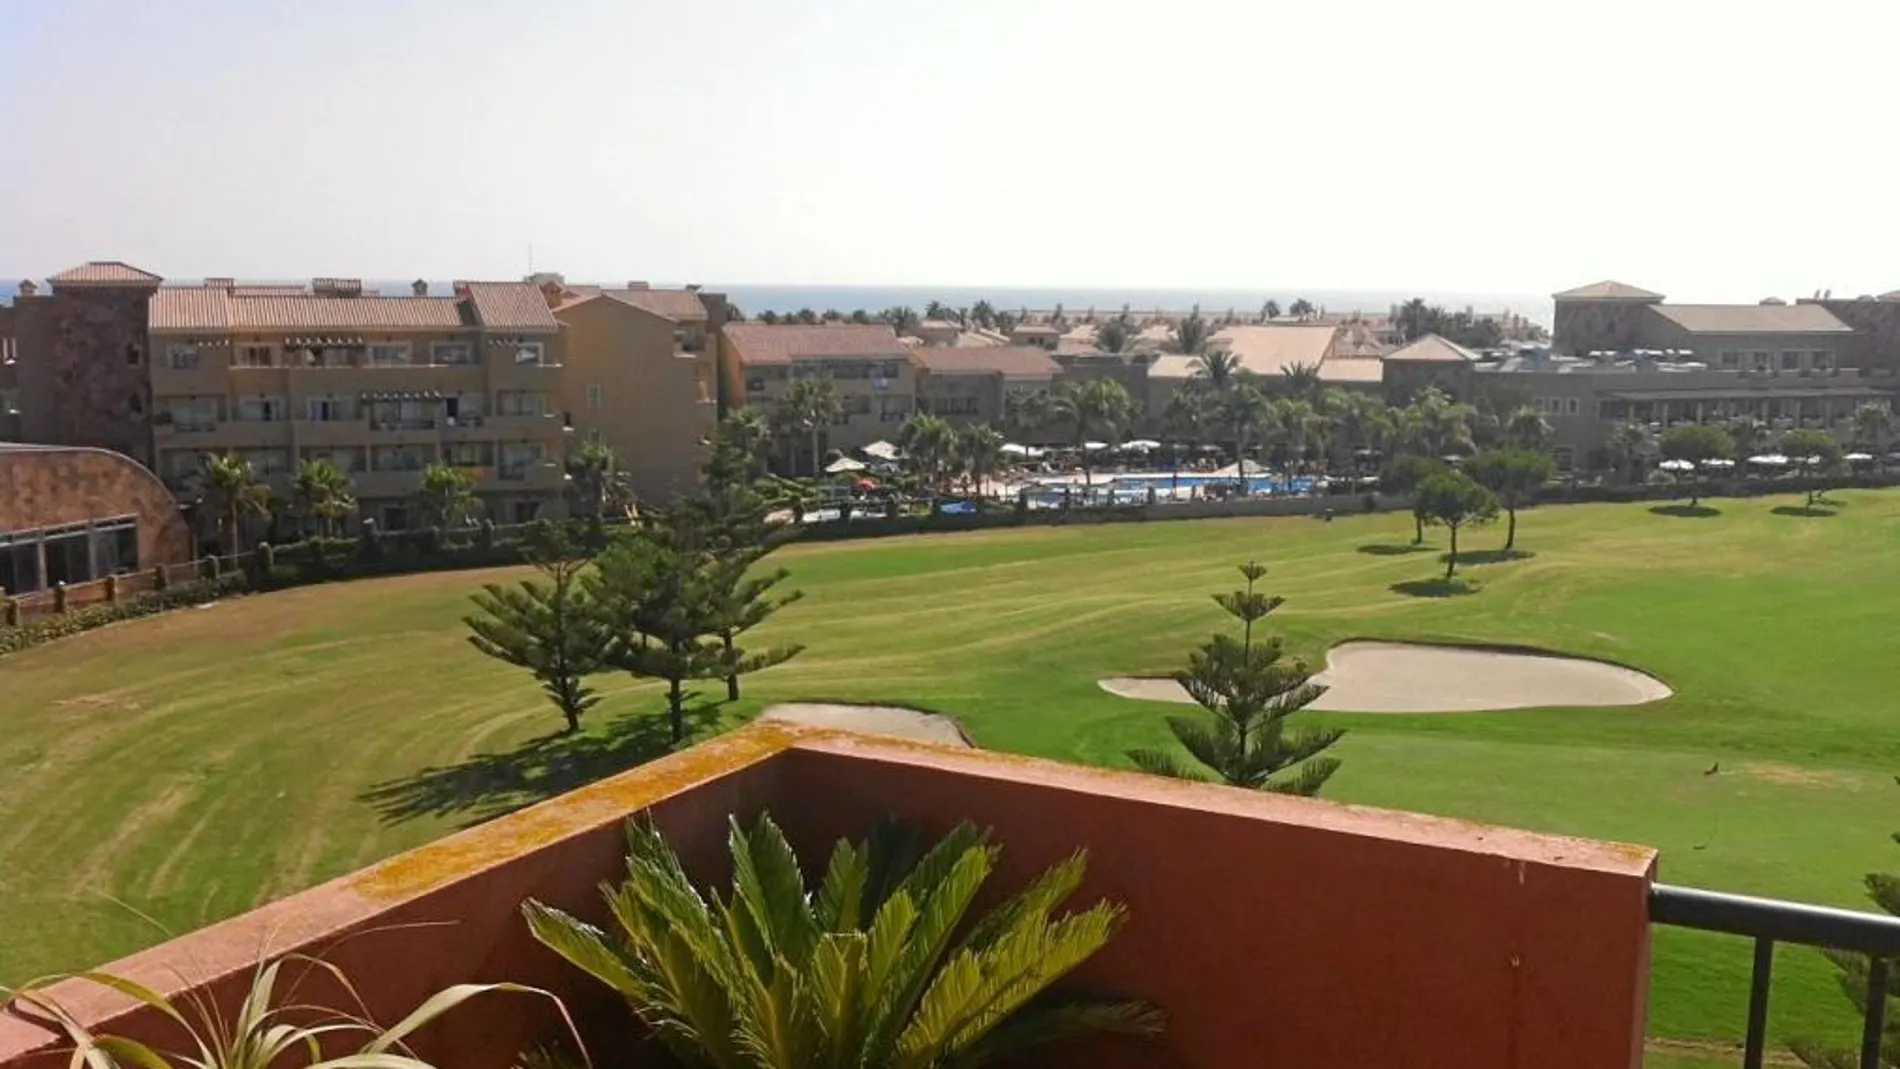 Vista del campo de golf y la piscina del hotel donde se celebran las actividades